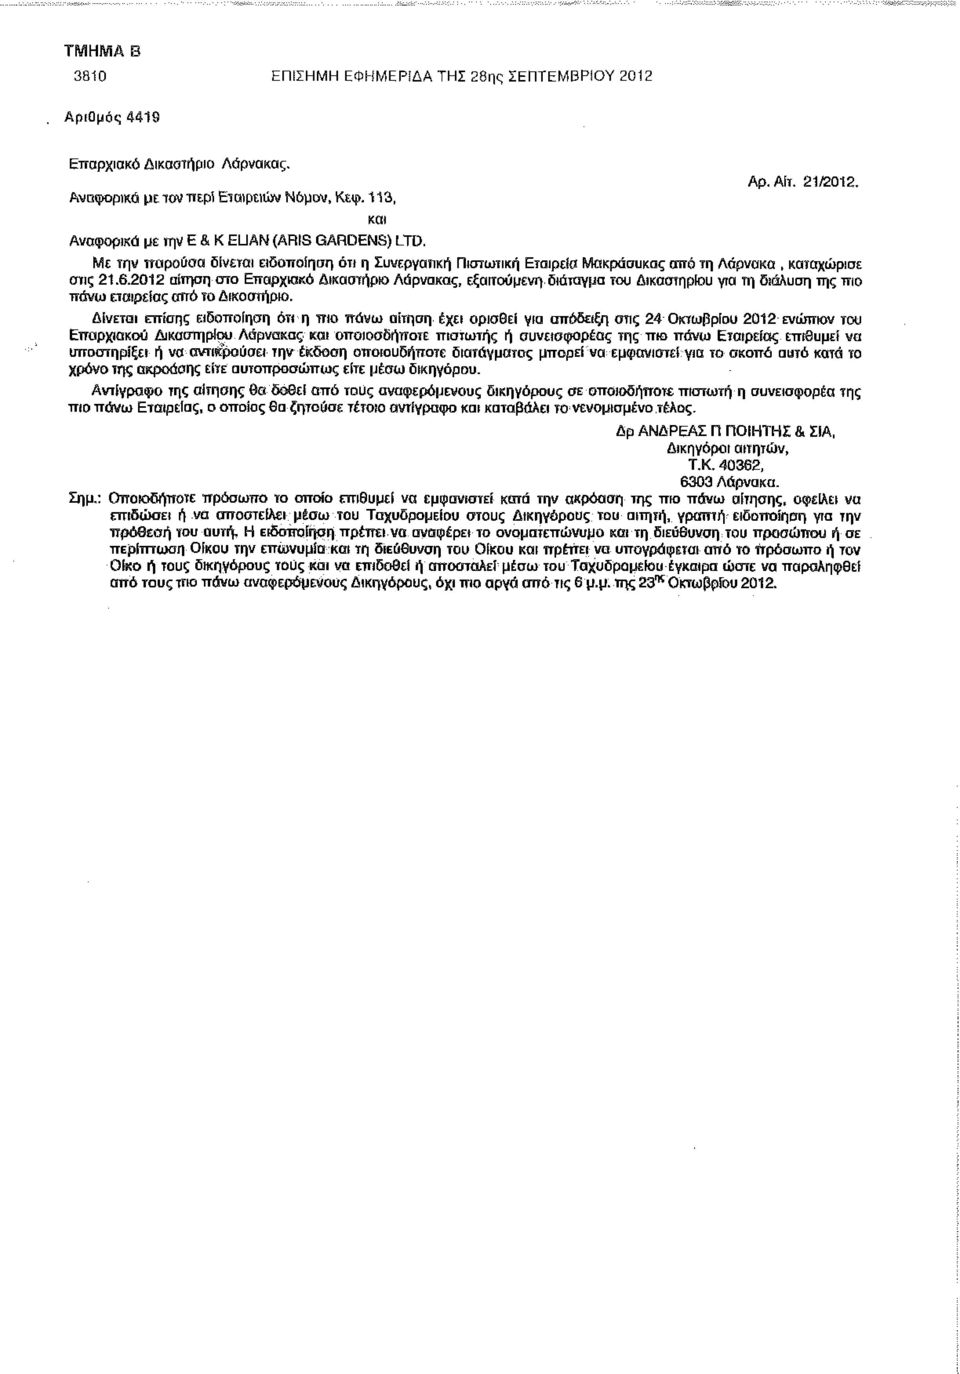 2012 αίτηση στο Επαρχιακό Δικαστήριο Λάρνακας, εξαιτούμενη. διάταγμα του Δικαστηρίου νια τη διάαυση της πιο πάνω εταιρείας αϊτό το Δικαστήριο.